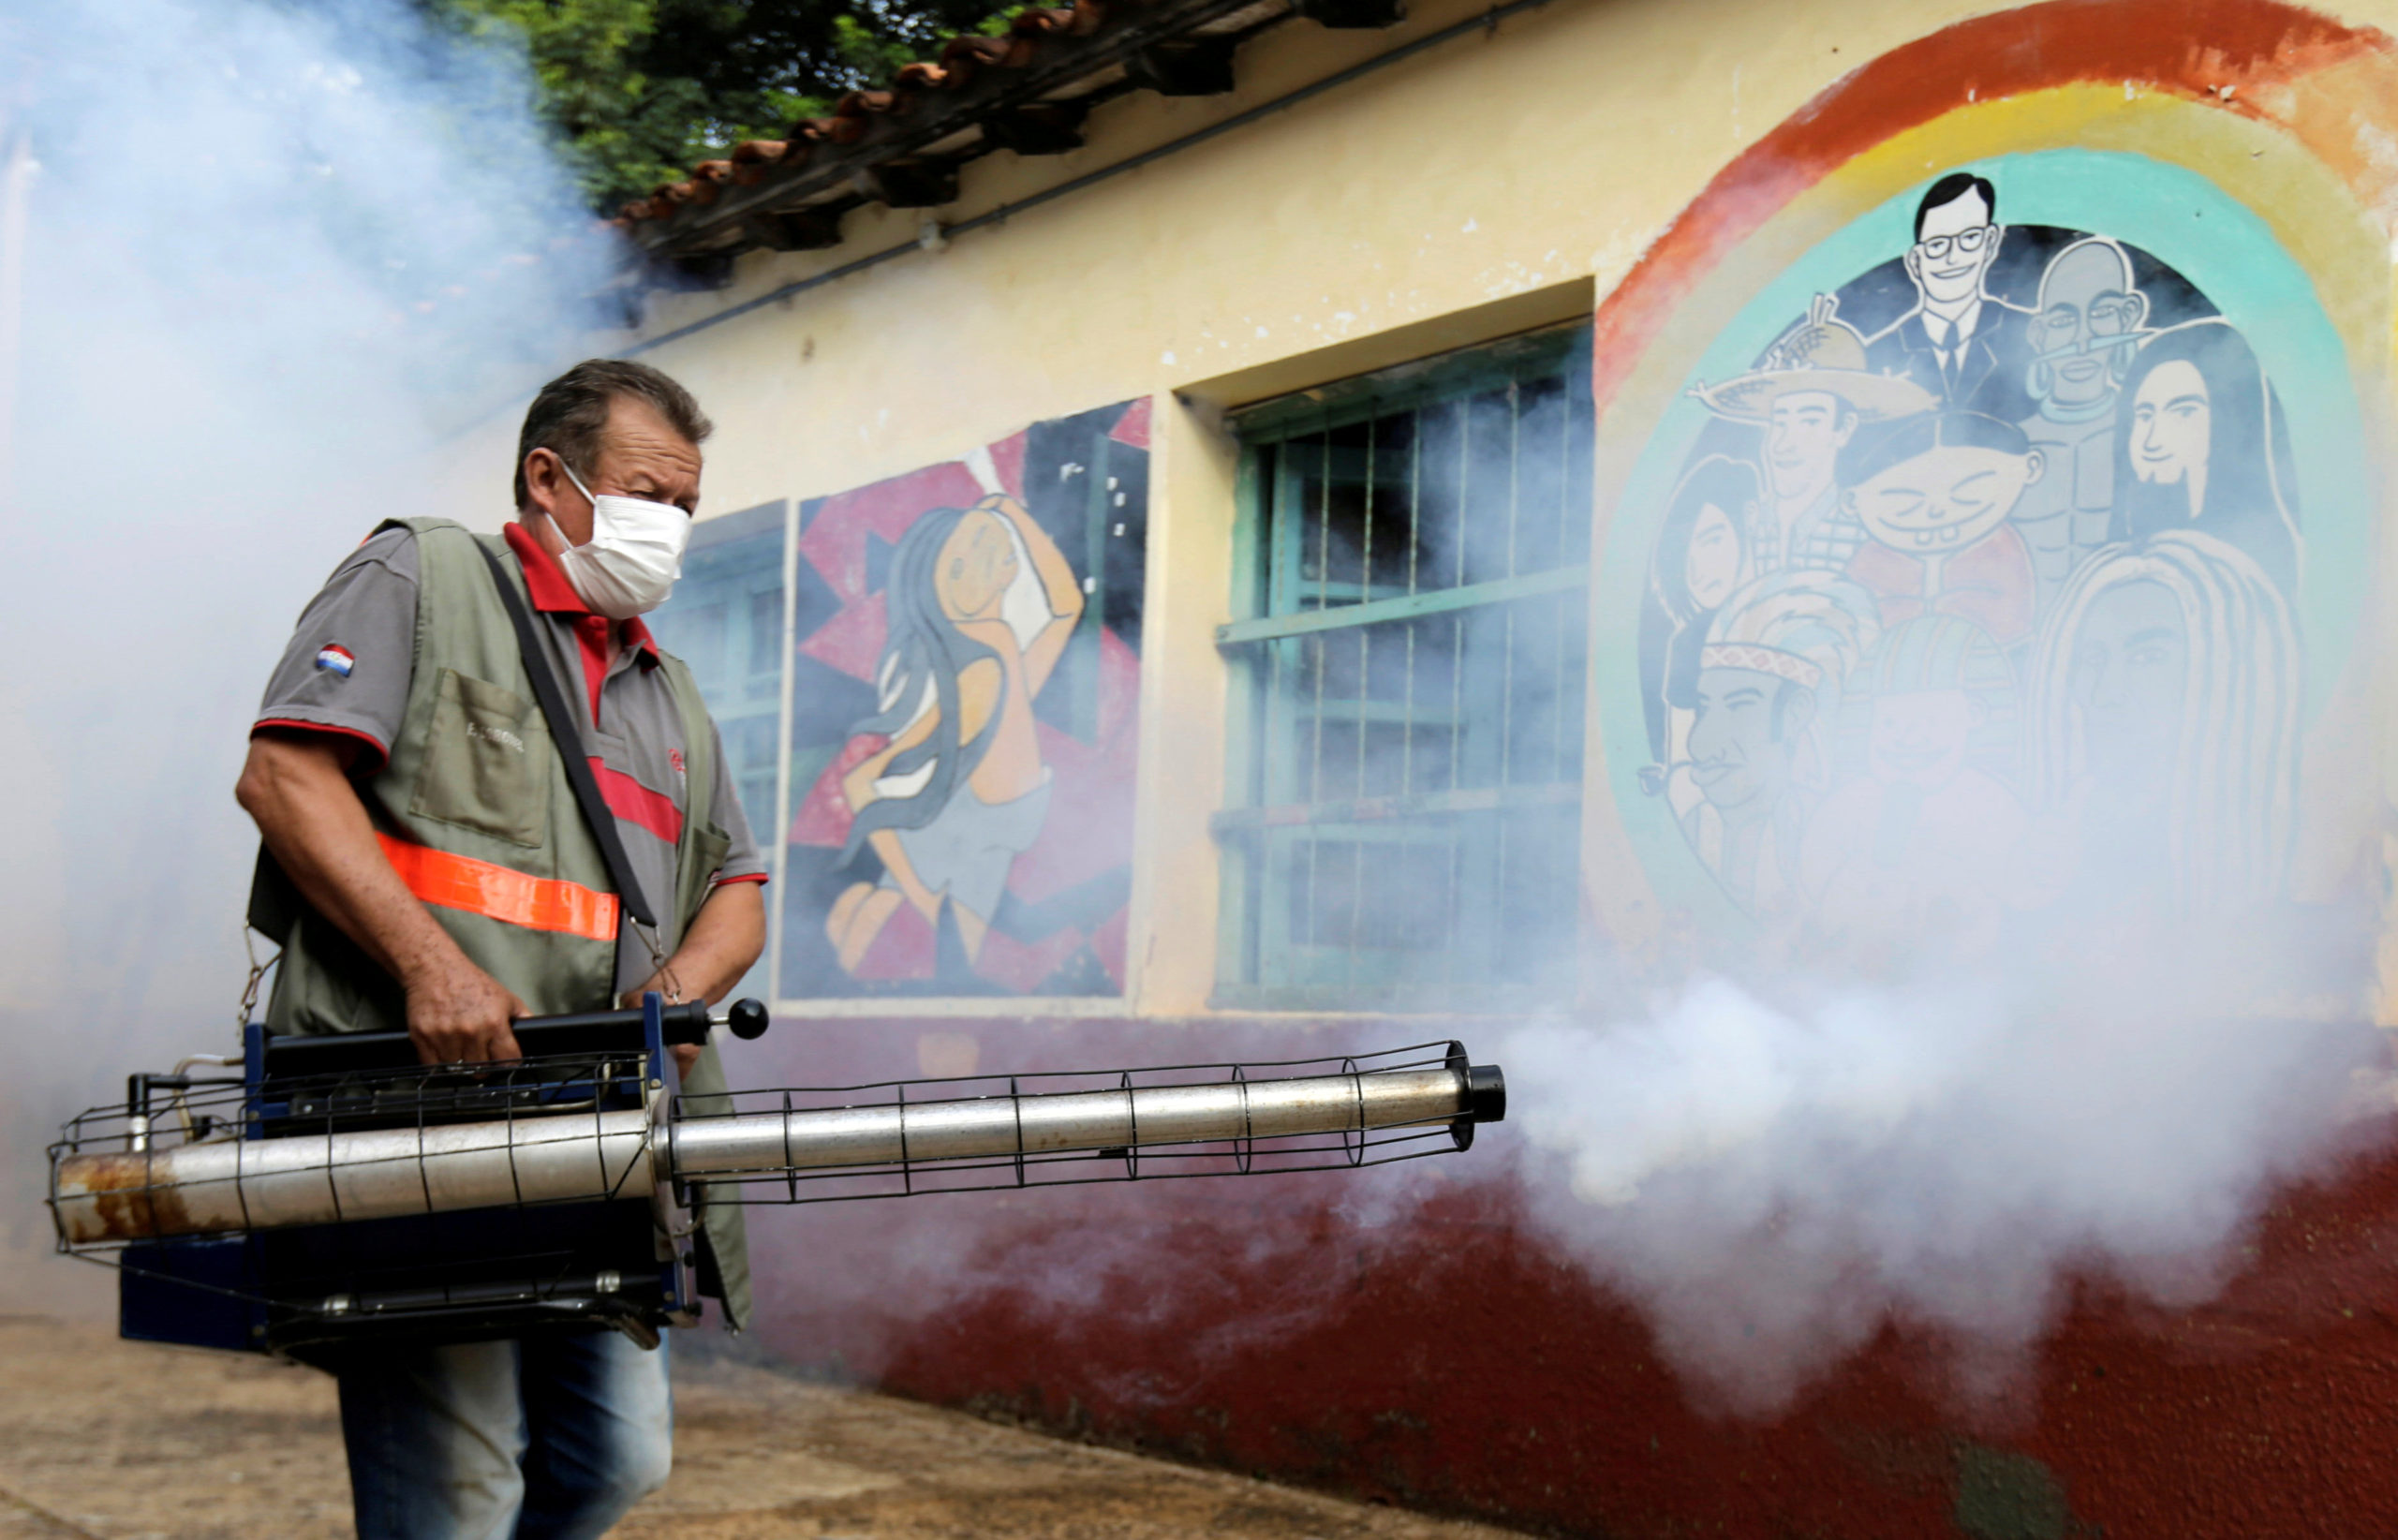 16 νεκροί από δάγκειο πυρετό στην Παραγουάη